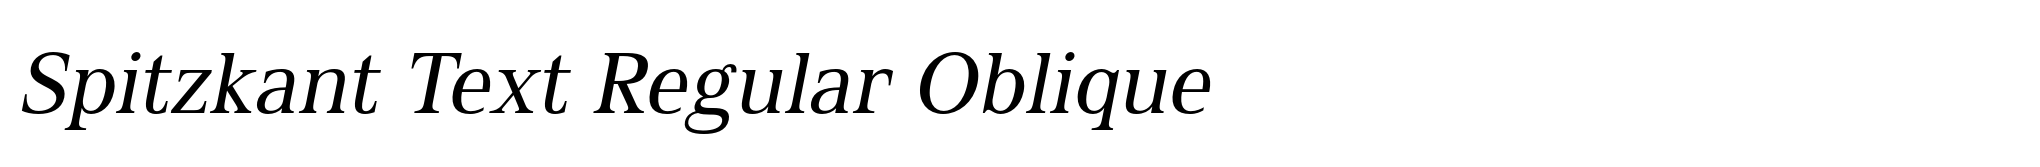 Spitzkant Text Regular Oblique image